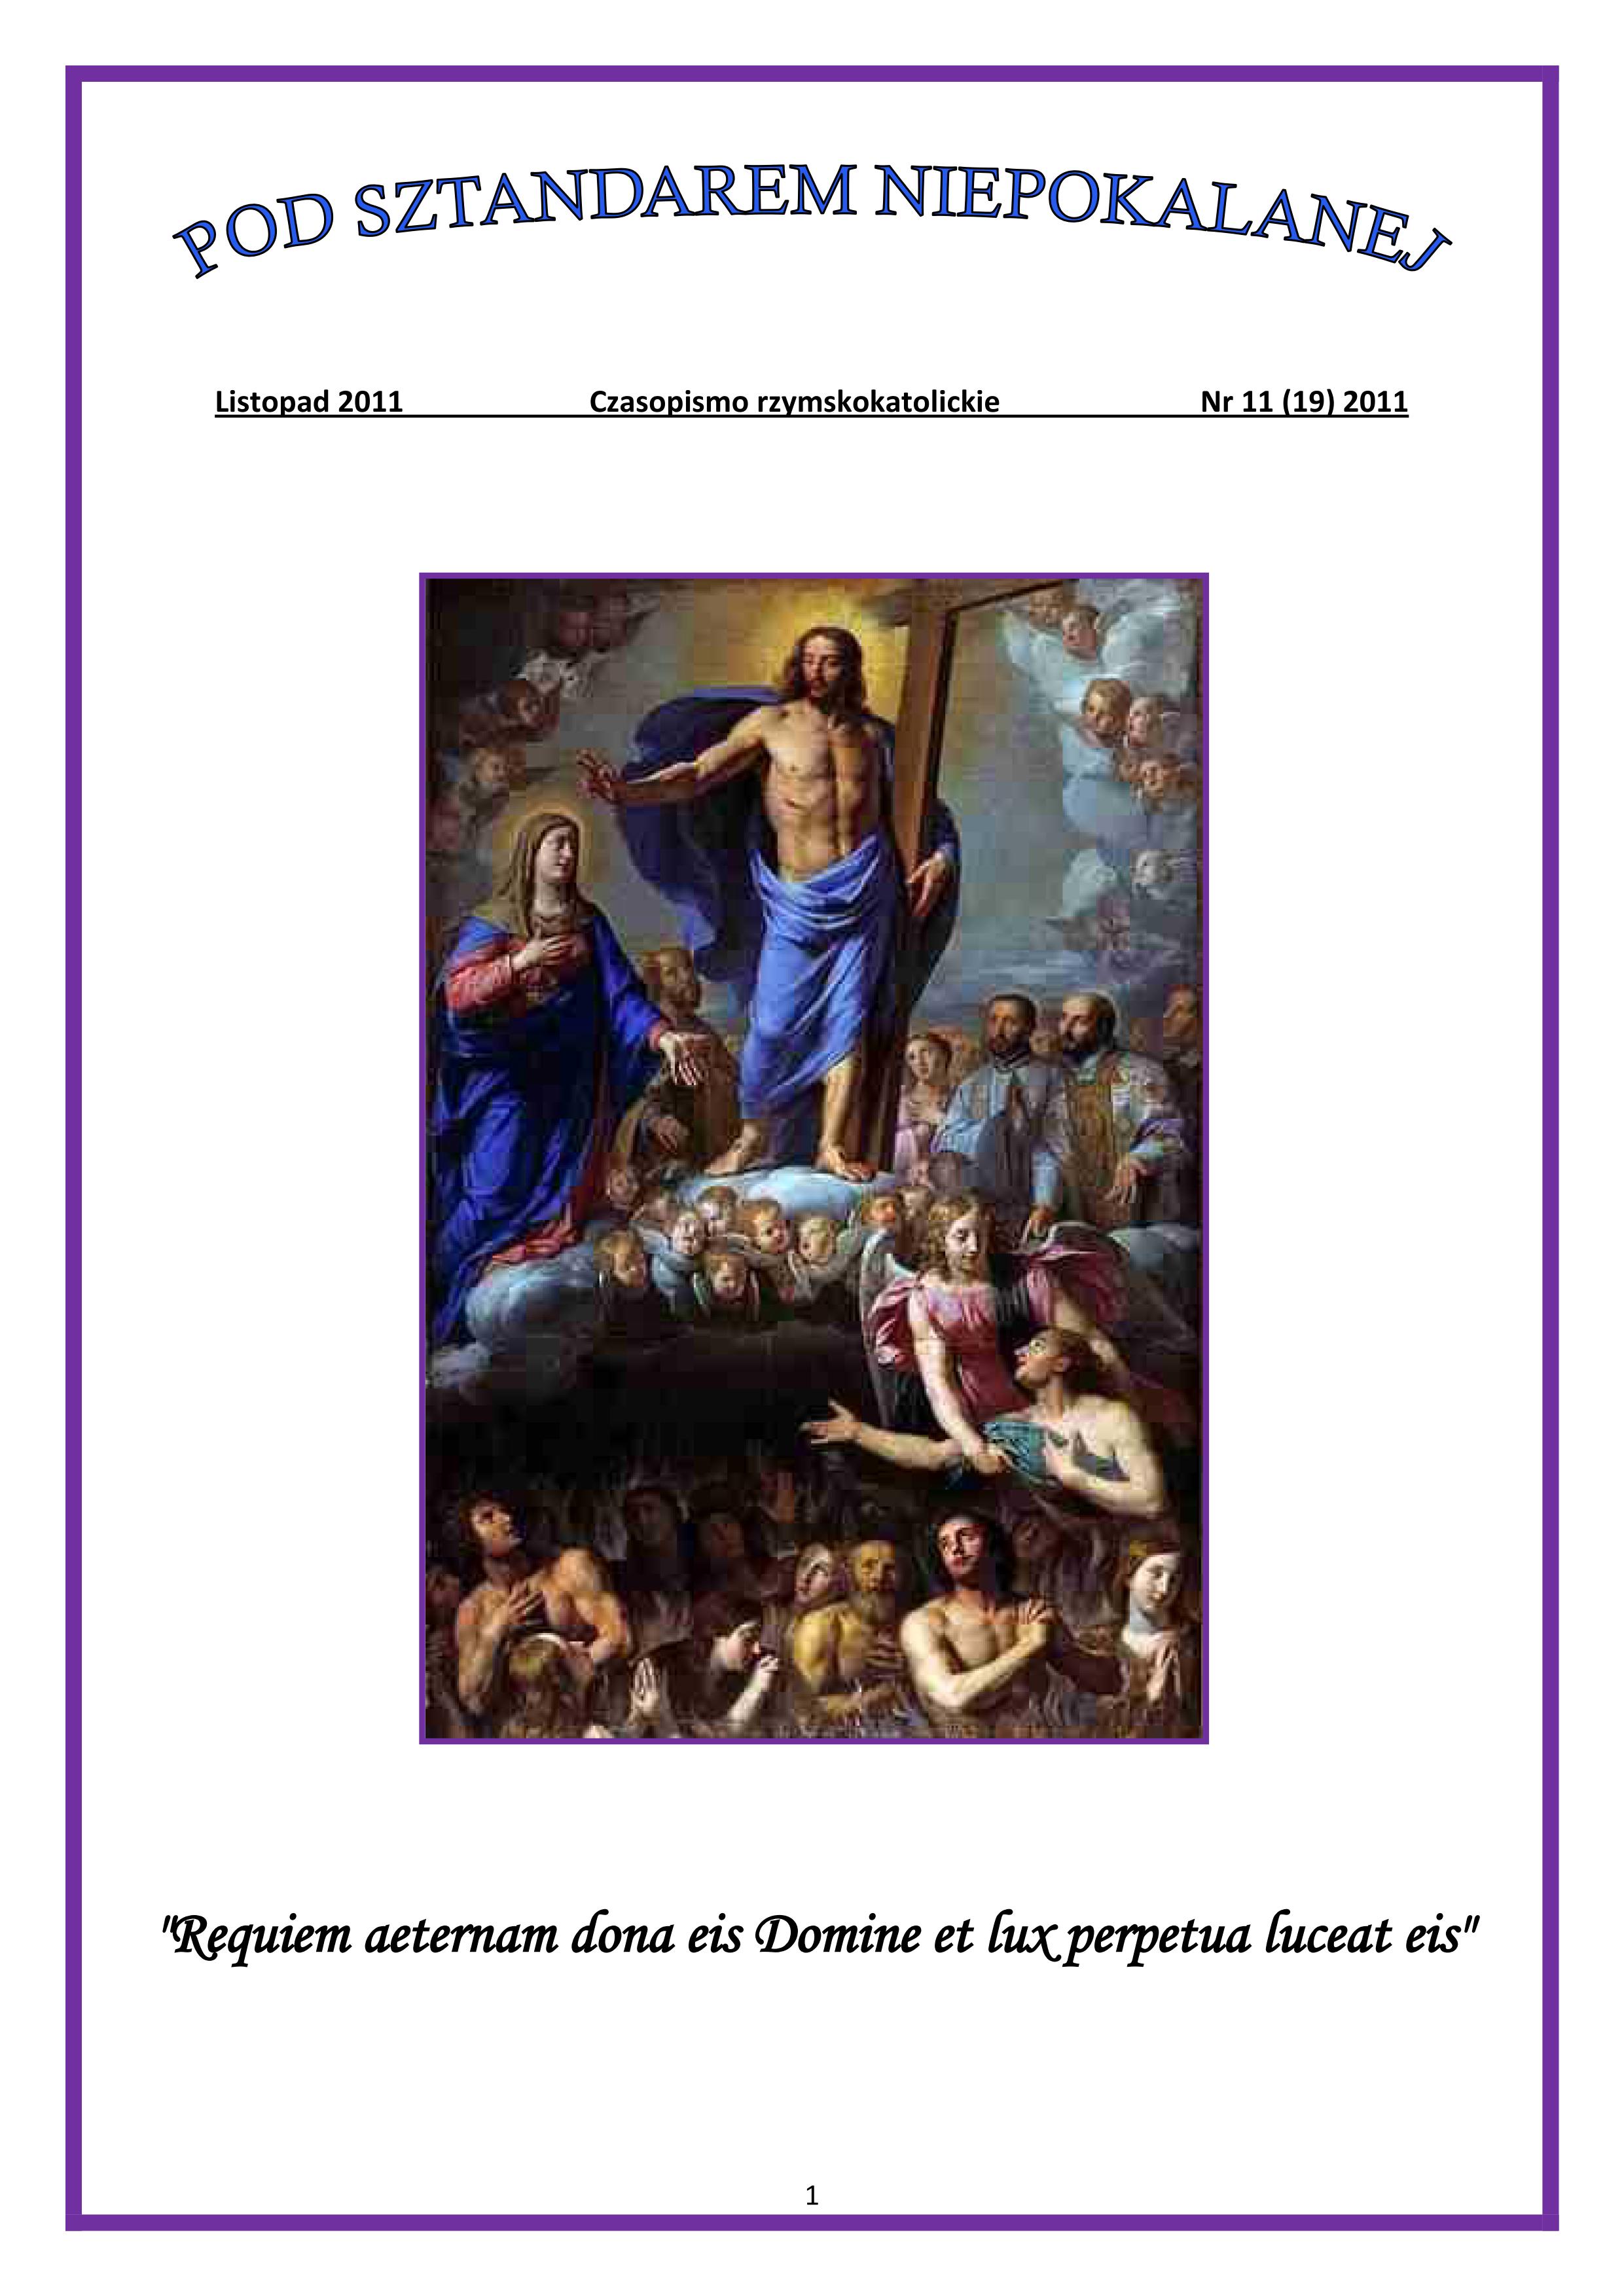 "Pod Sztandarem Niepokalanej". Nr 19. Listopad 2011. Czasopismo rzymskokatolickie.